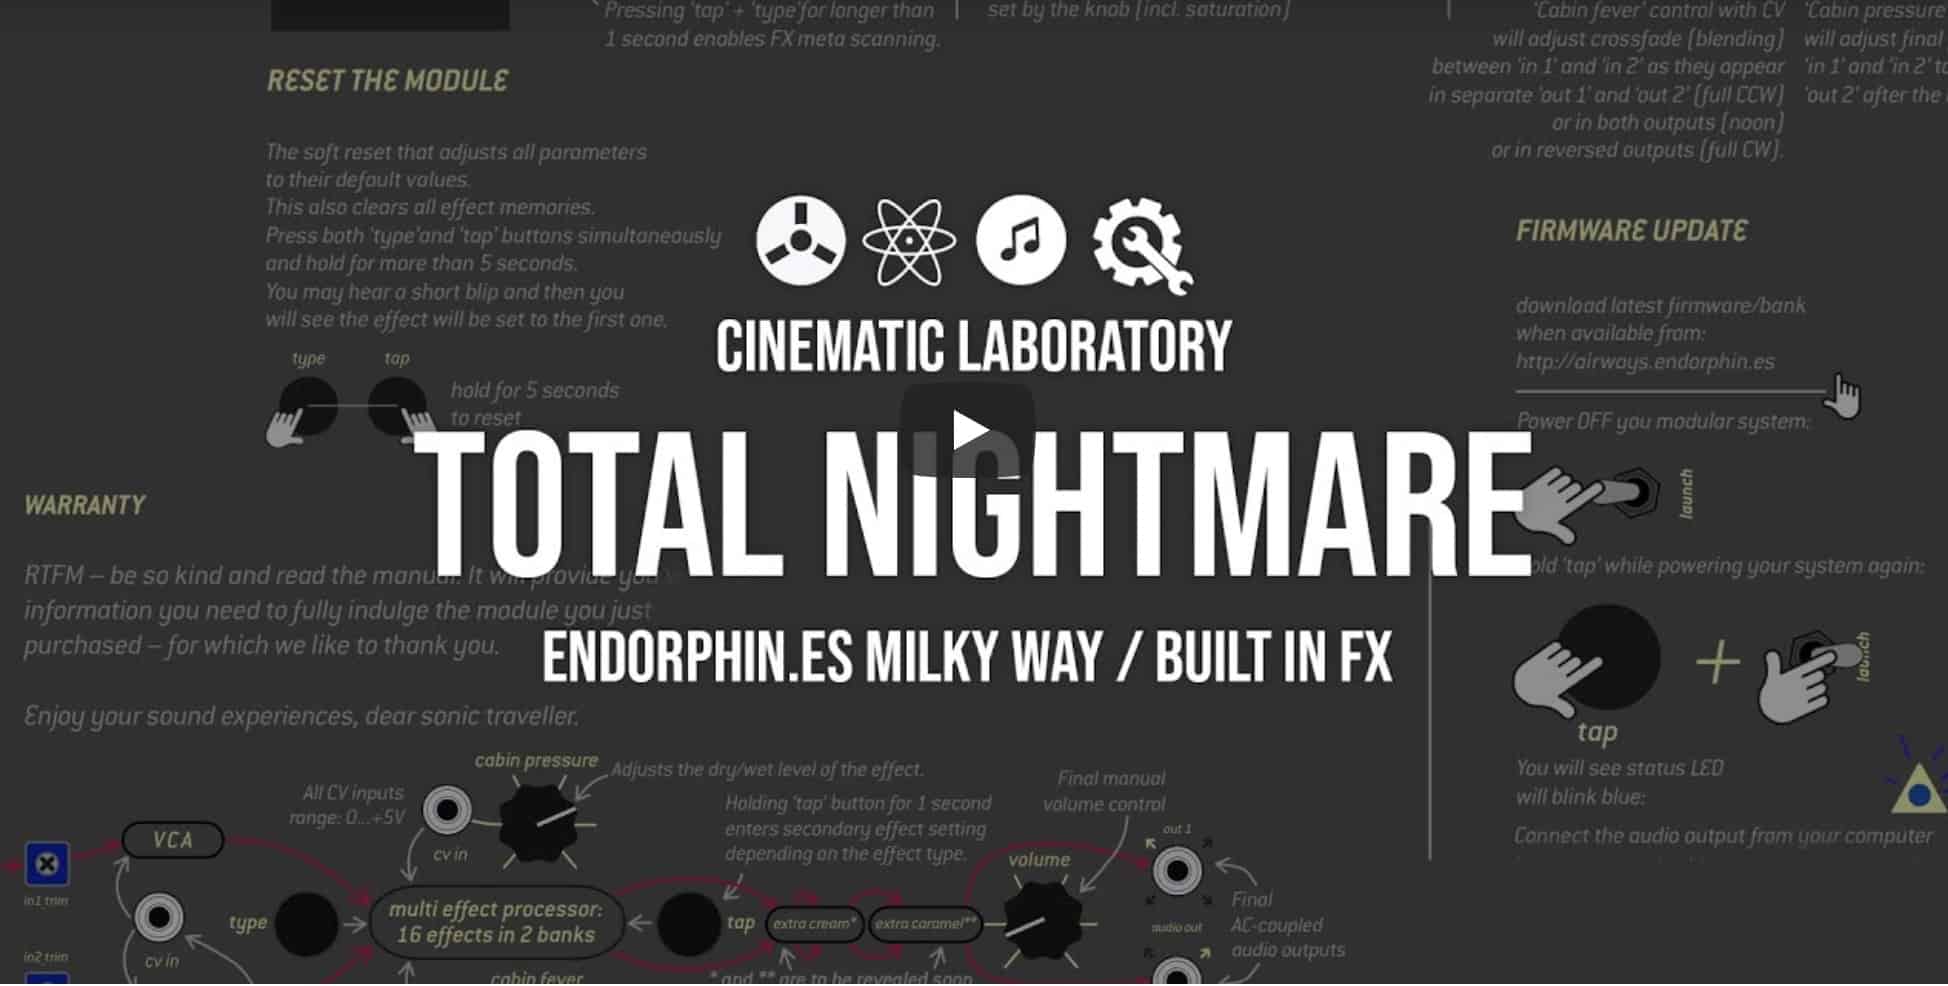 Total Nightmare | Endorphin.es Milky Way